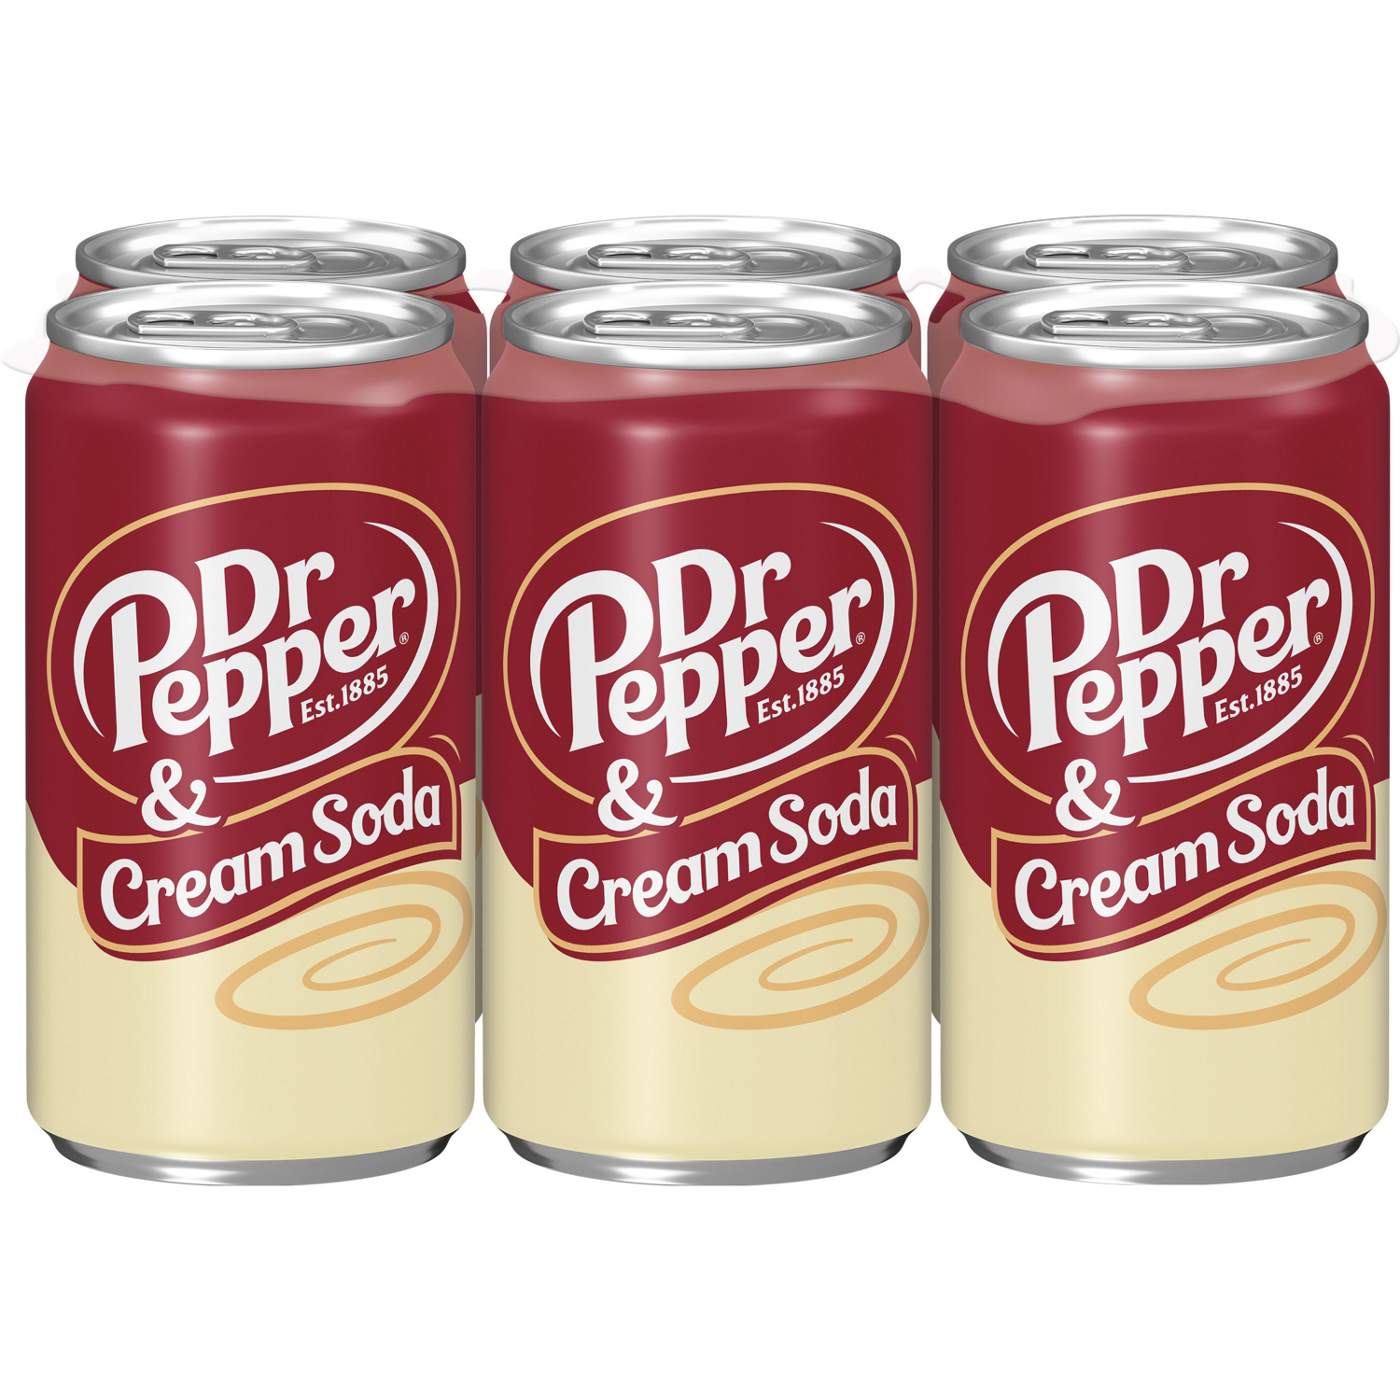 Dr Pepper & Cream Soda Mini 7.5 oz Cans; image 1 of 7